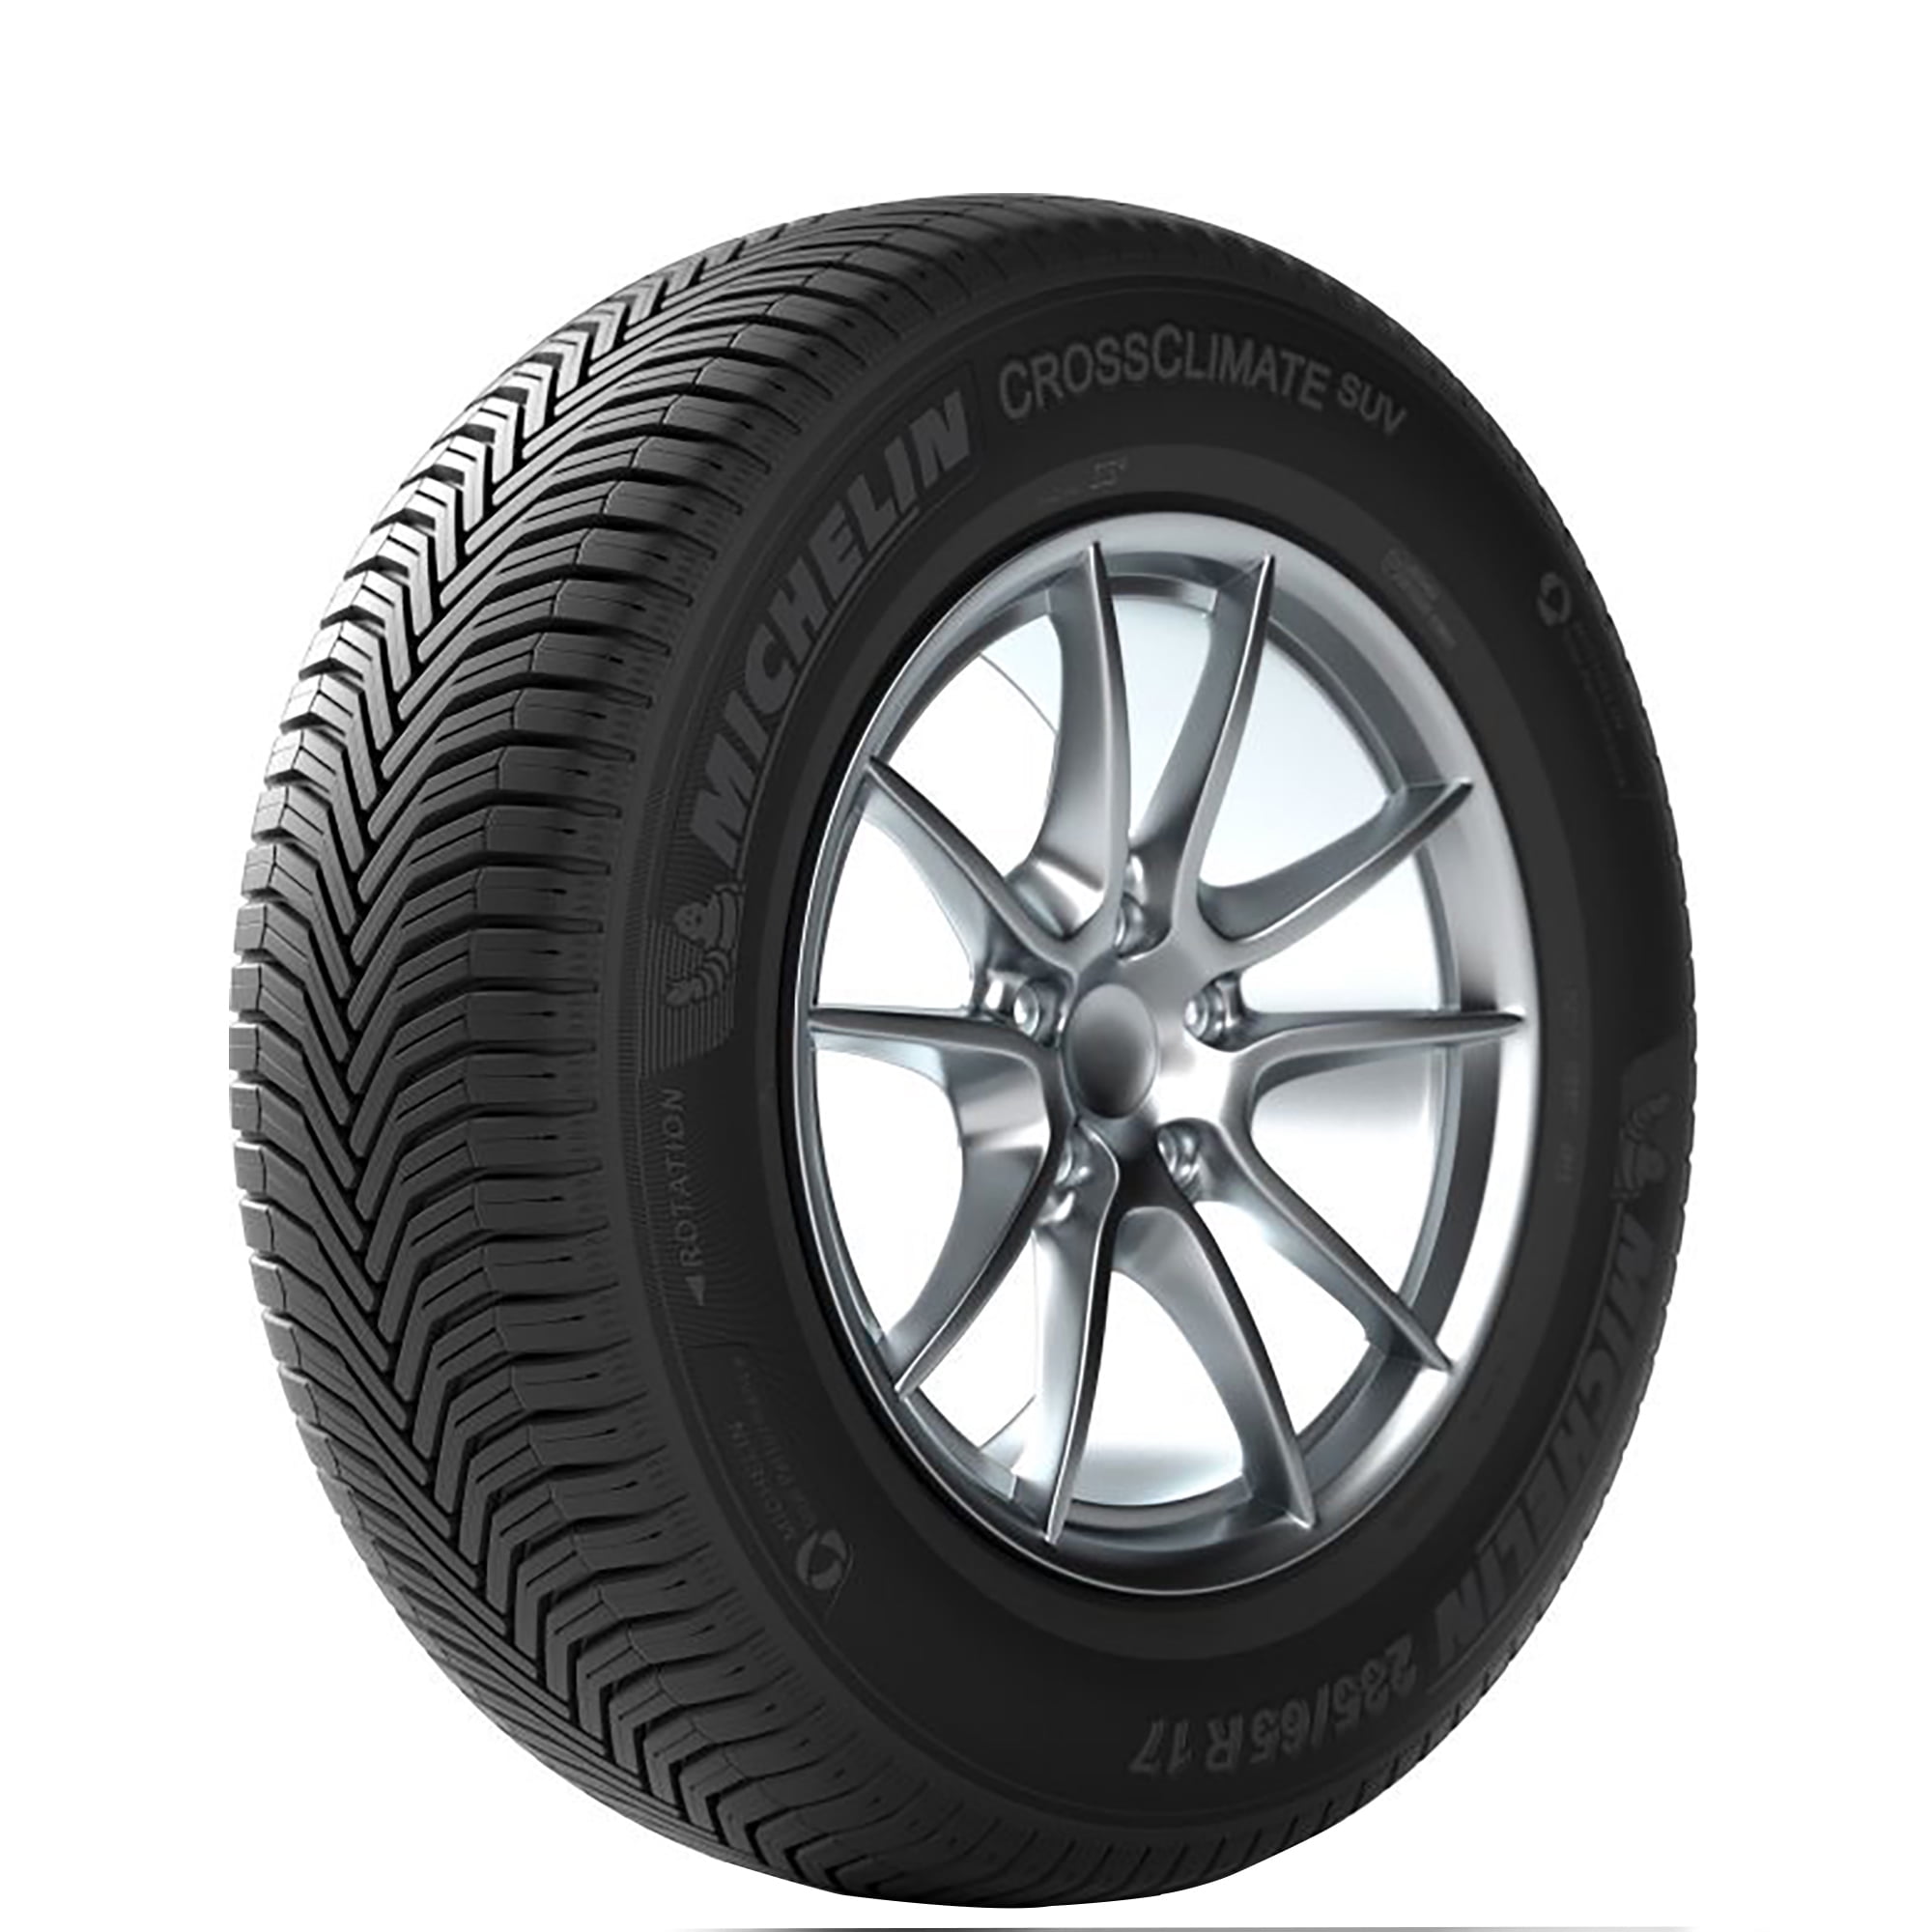 Michelin 104 Tire CrossClimate SUV V 235/65-17